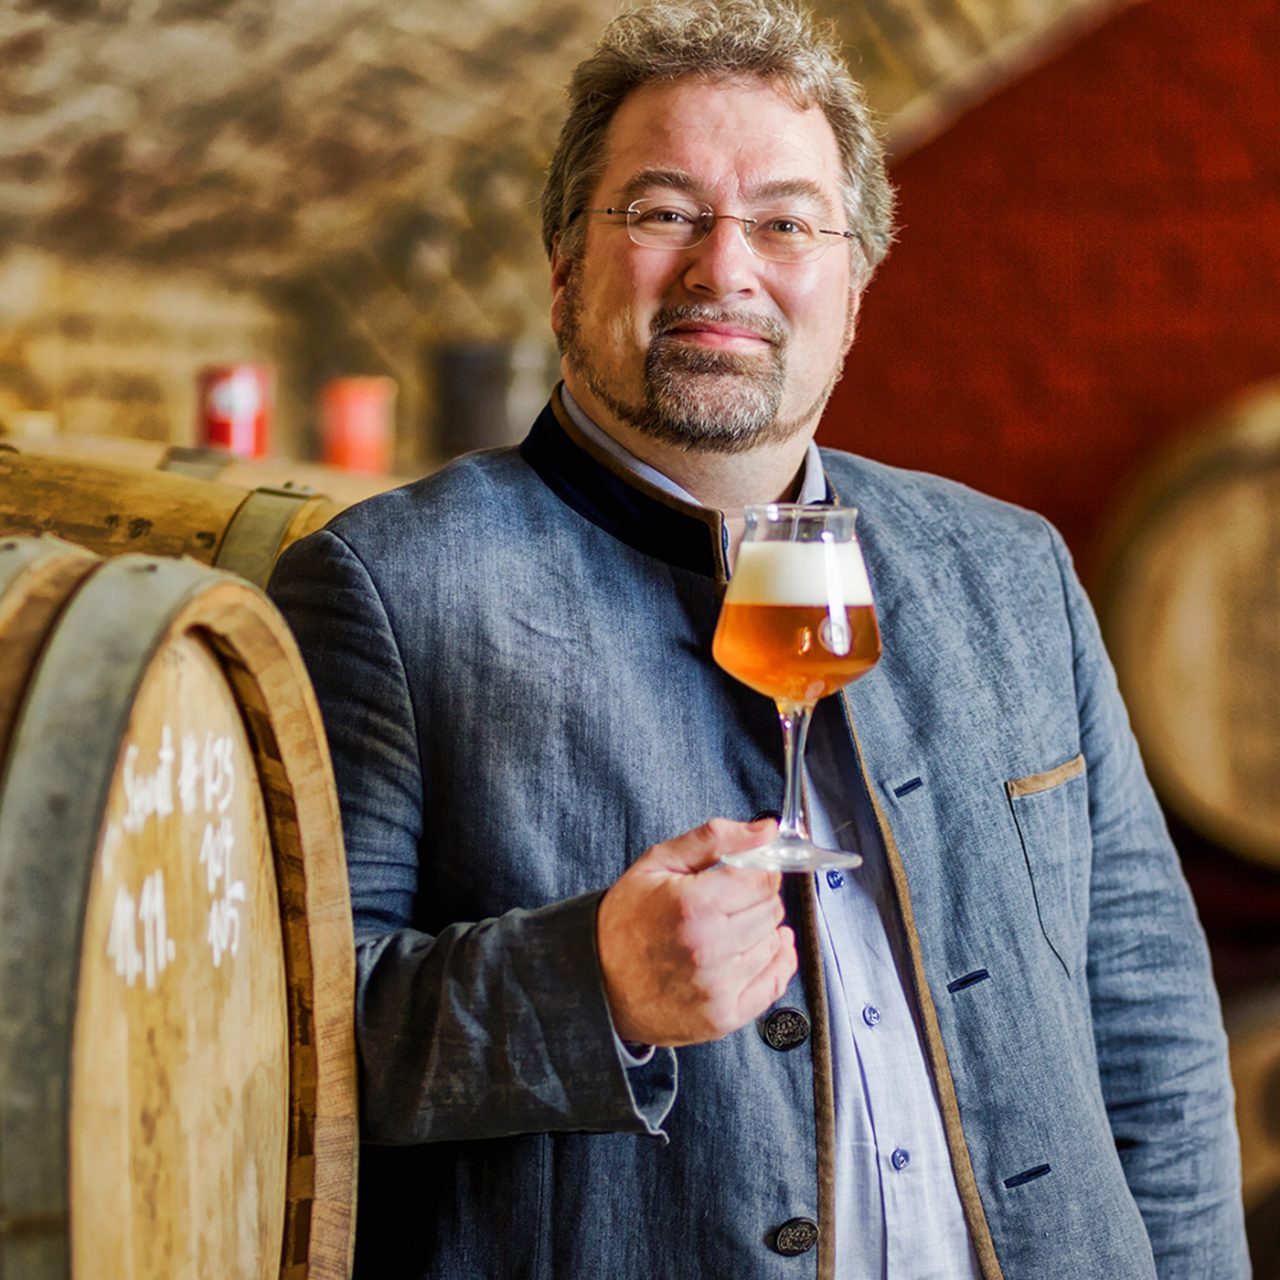 Auf dem Foto ist Markus Raupach mit einem Bier in der Hand vor Bierfässern zu sehen.